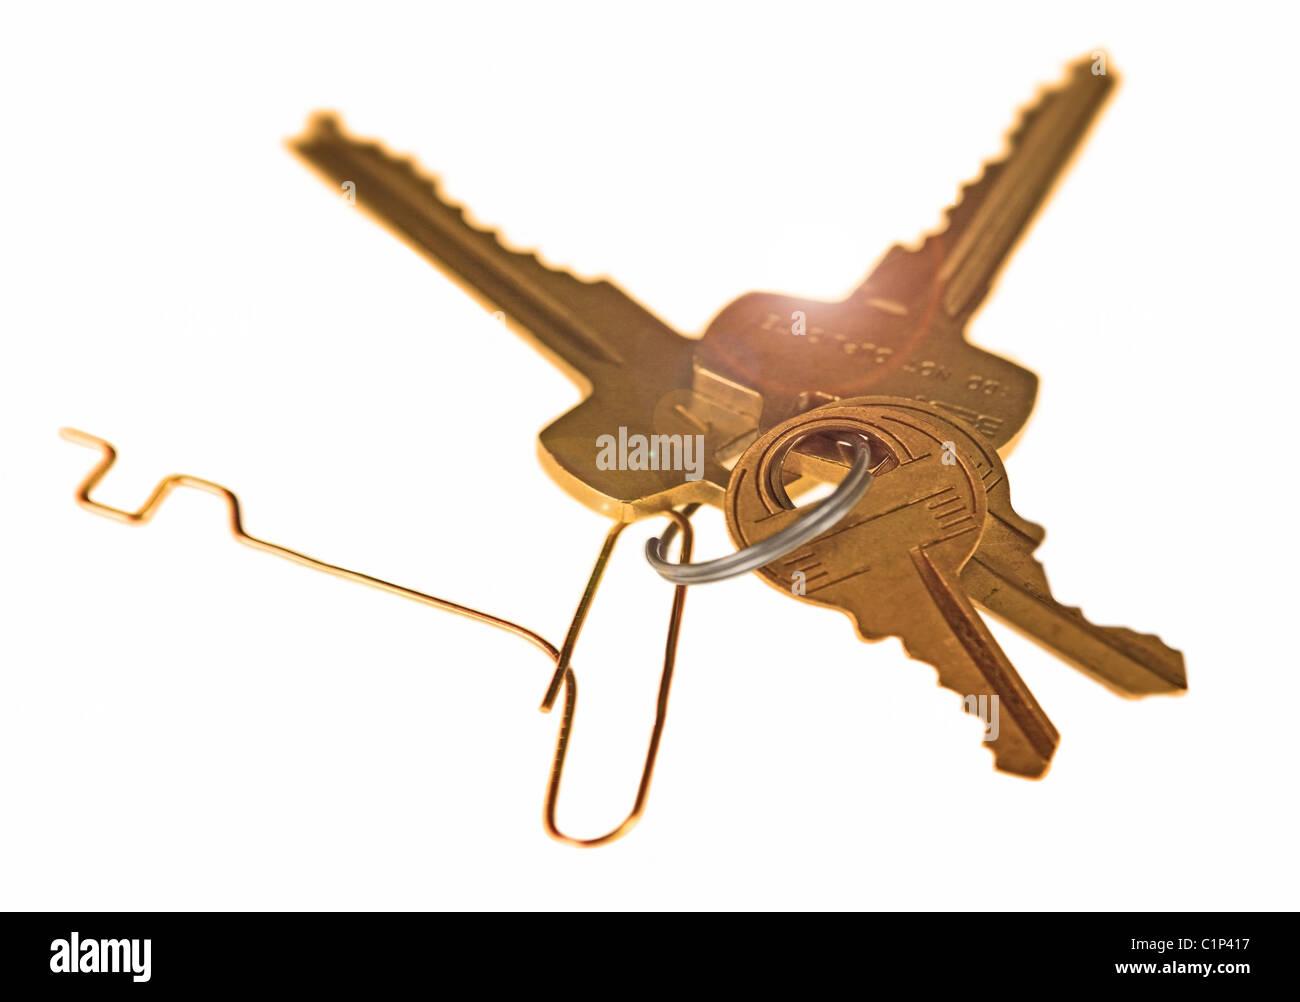 Portachiavi con un ladro la chiave realizzata a mano con un fermaglio per la carta per uso illegale. Isolato, copy-spazio. Foto Stock